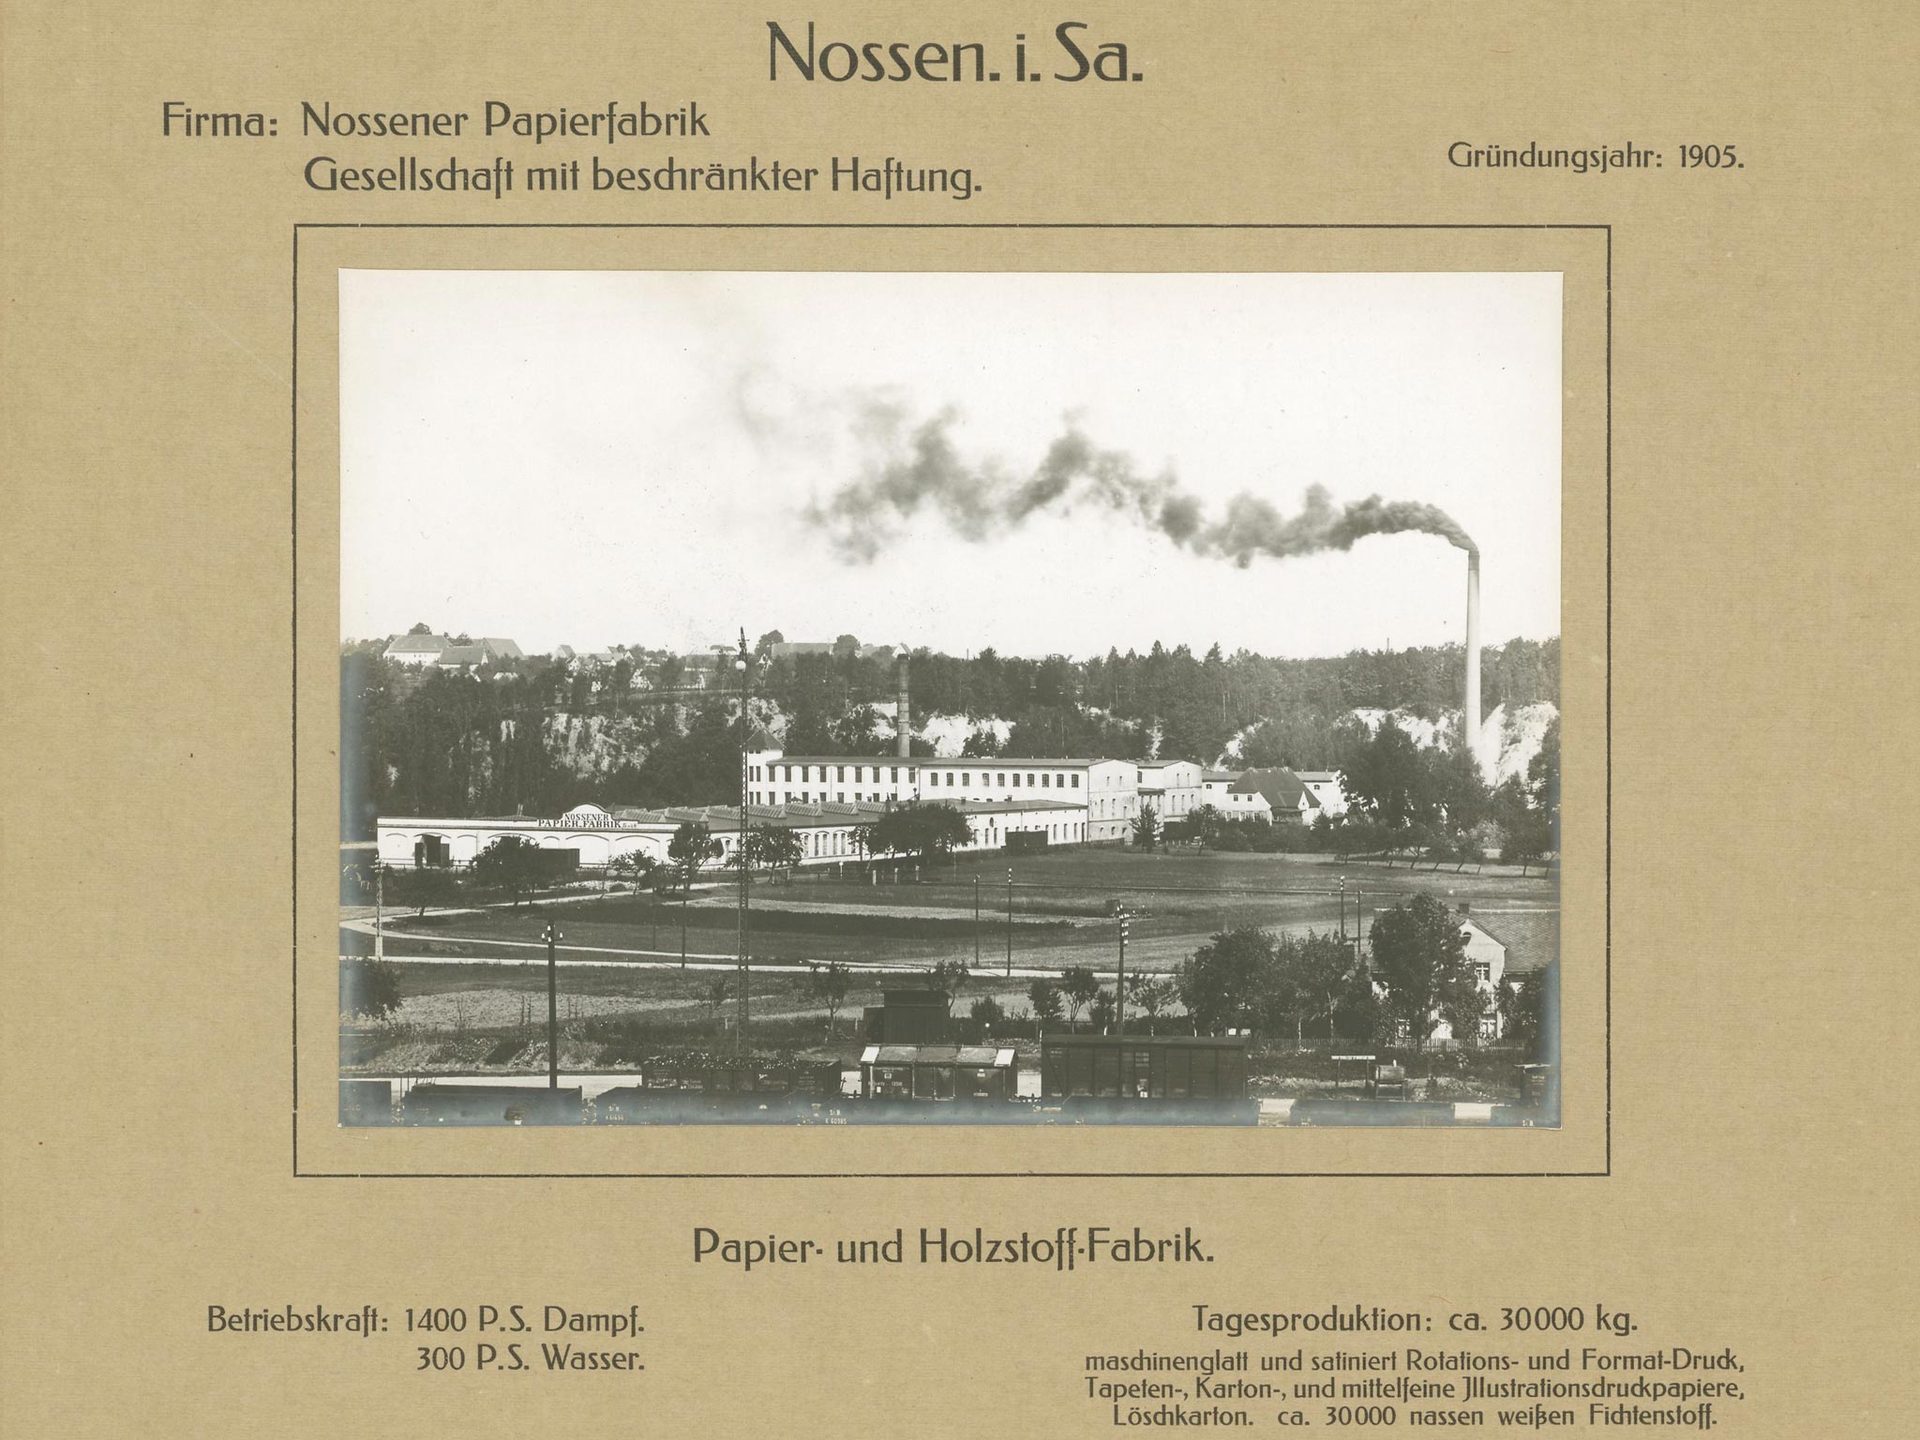 Nossener Papierfabrik, Nossen